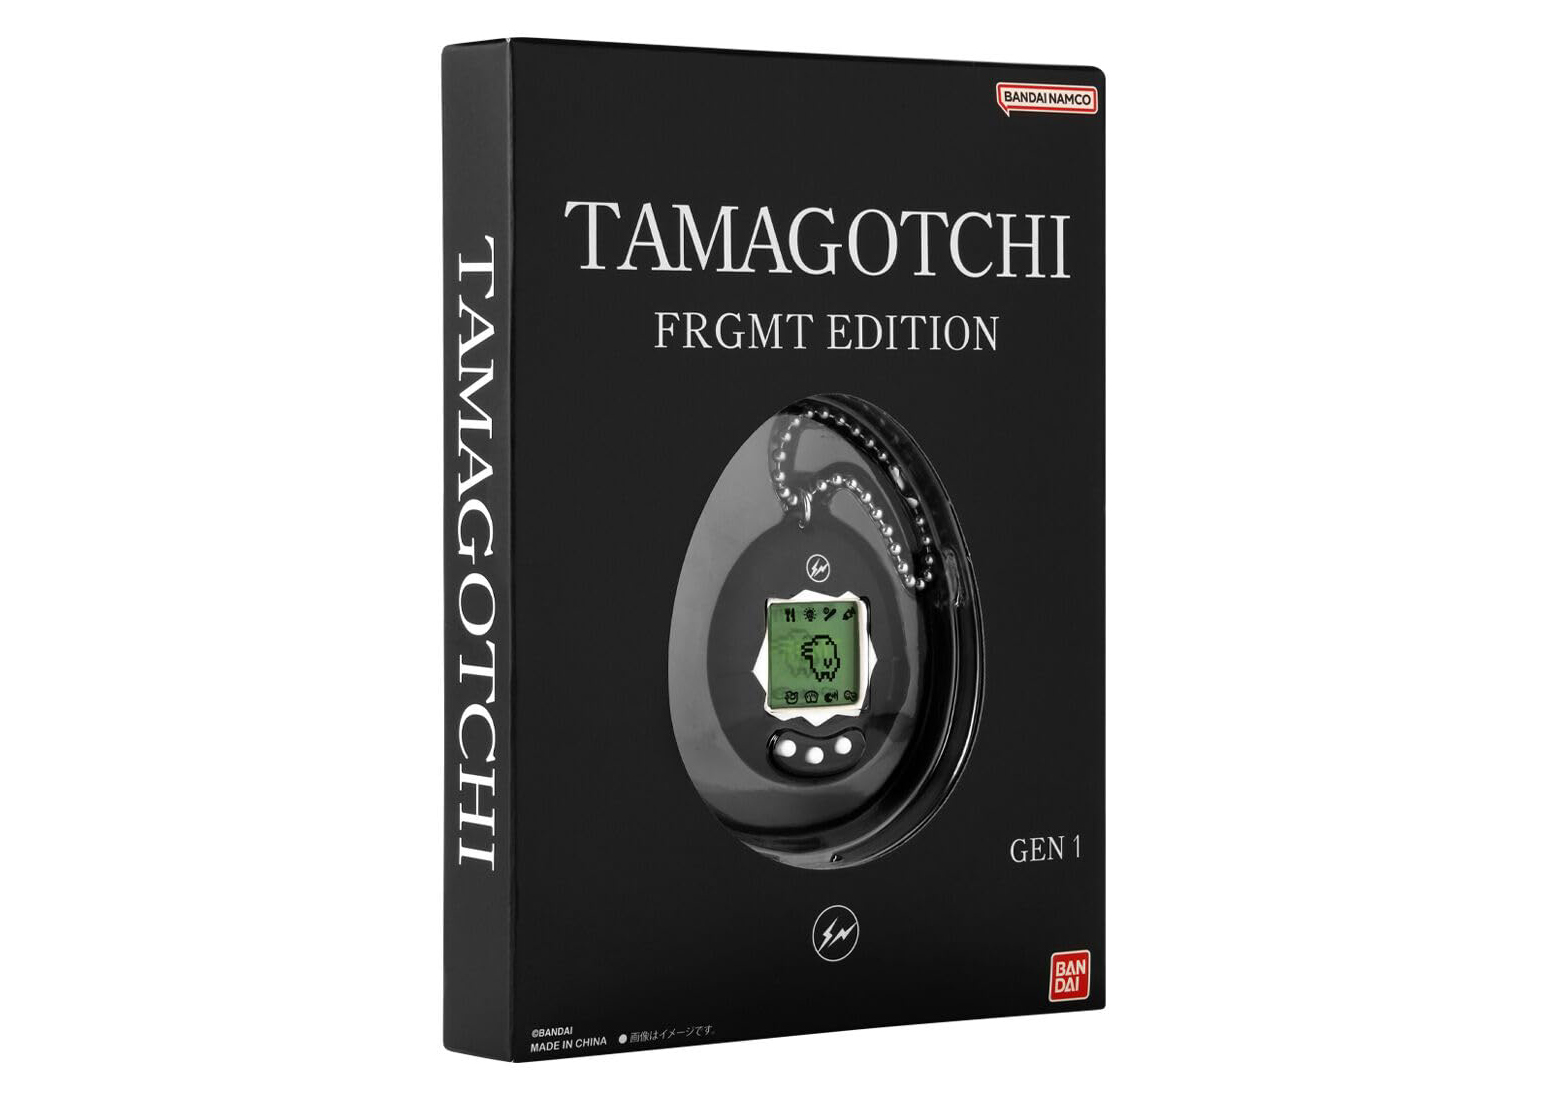 Bandai Tamagotchi FRGMT Edition Gen 1 - US